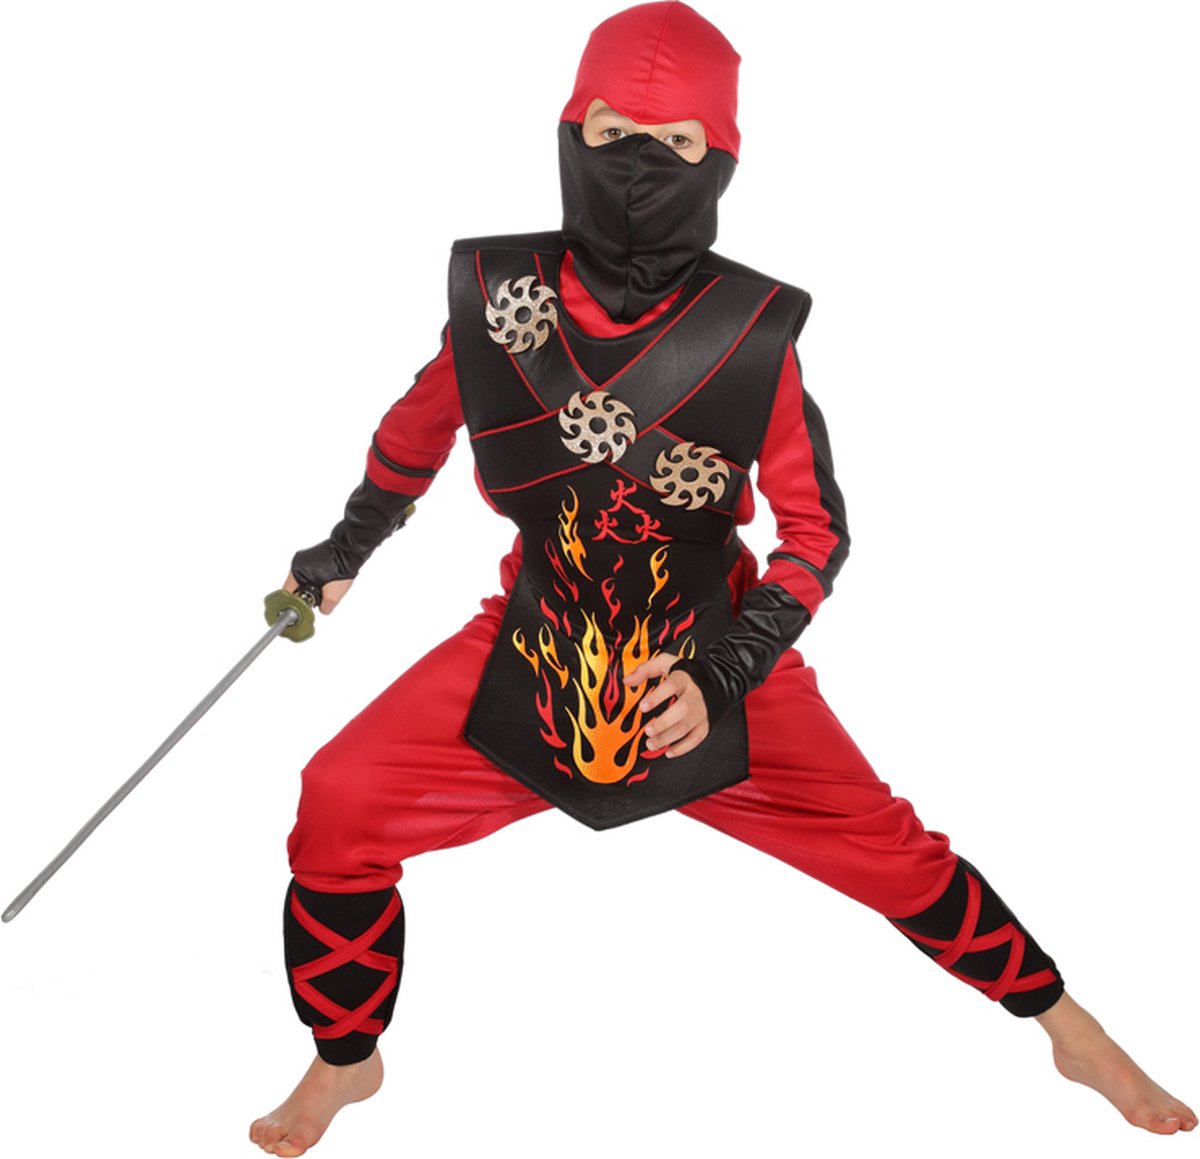 Wilbers & Wilbers - Ninja & Samurai Kostuum - Vurige Rode Ninja Strijder Met Werpsterren Kind Kostuum - Rood - Maat 104 - Carnavalskleding - Verkleedkleding